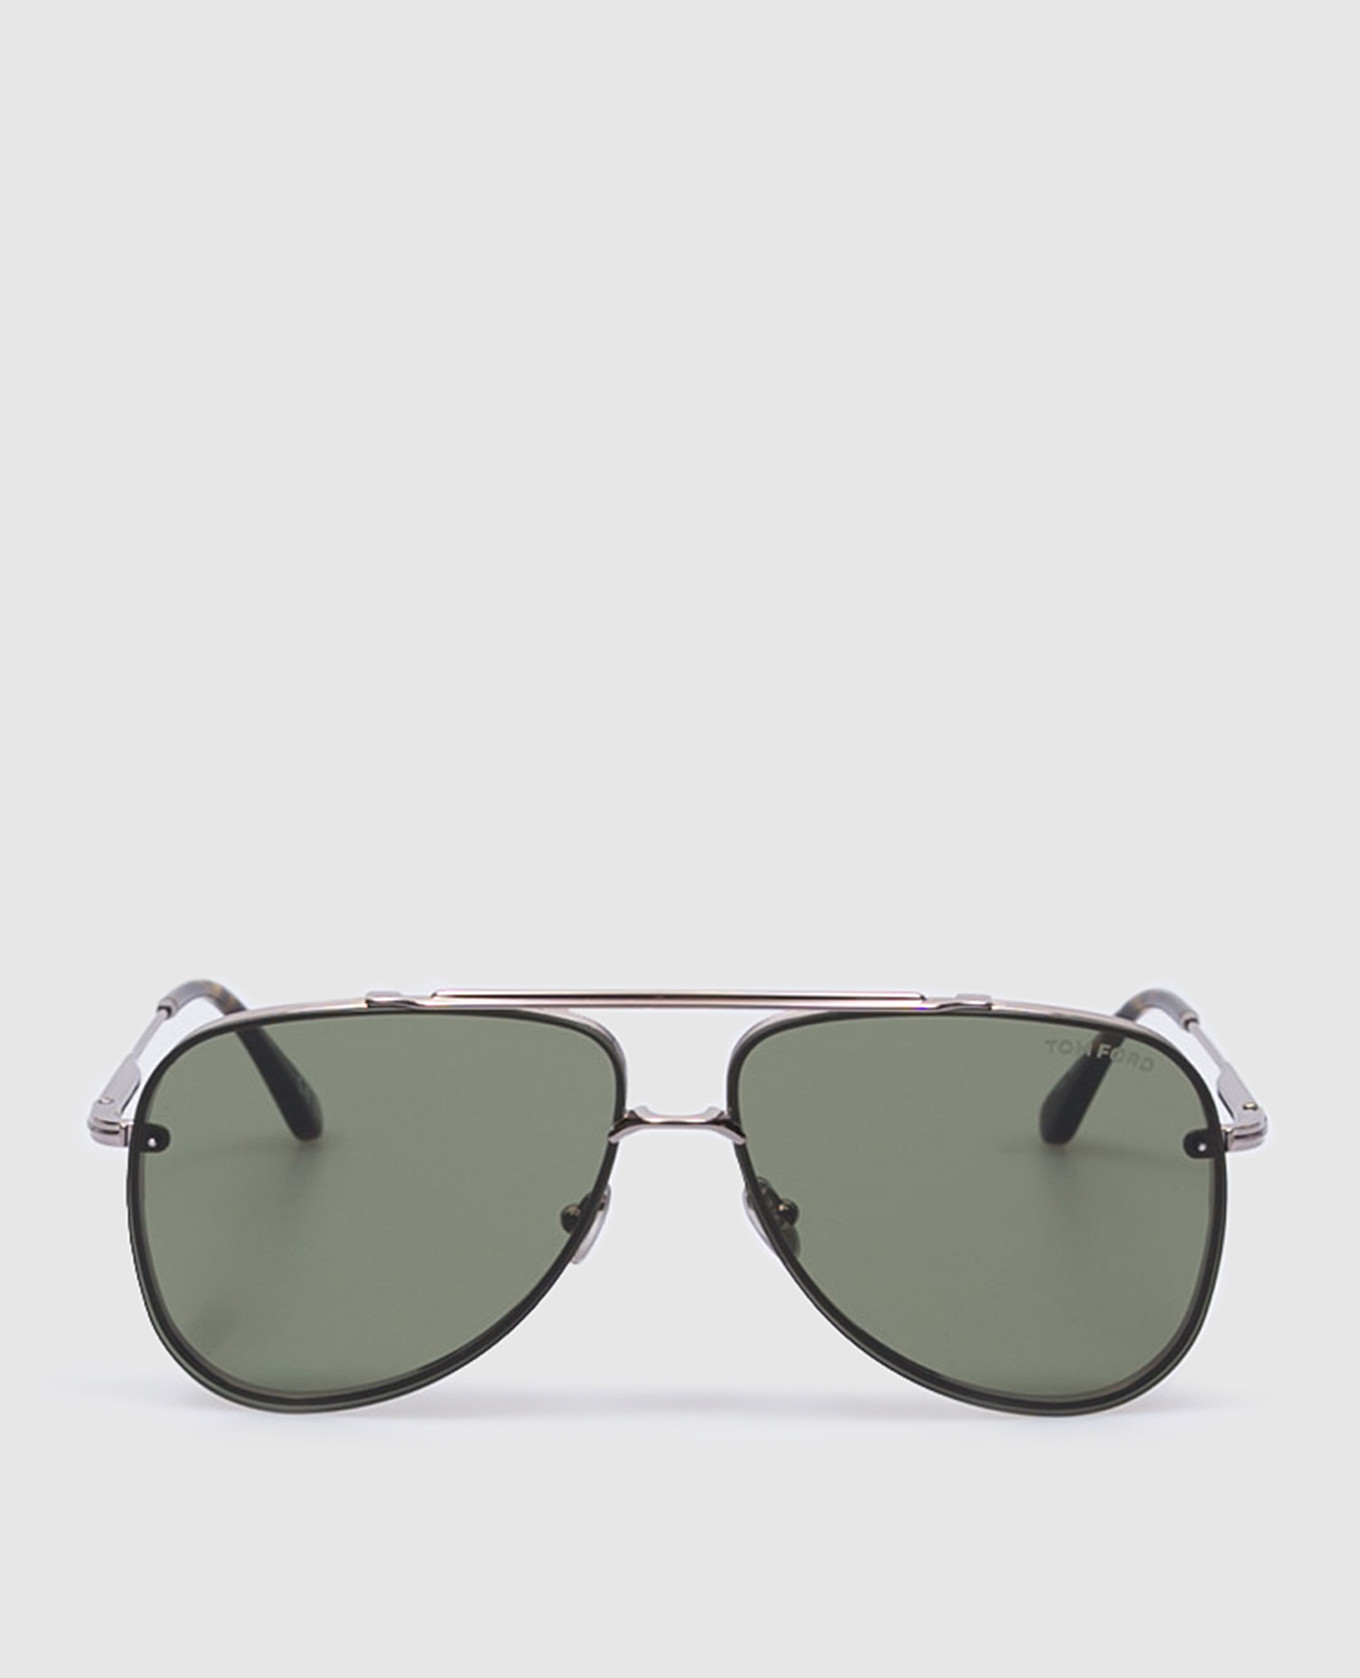 LEON silver sunglasses